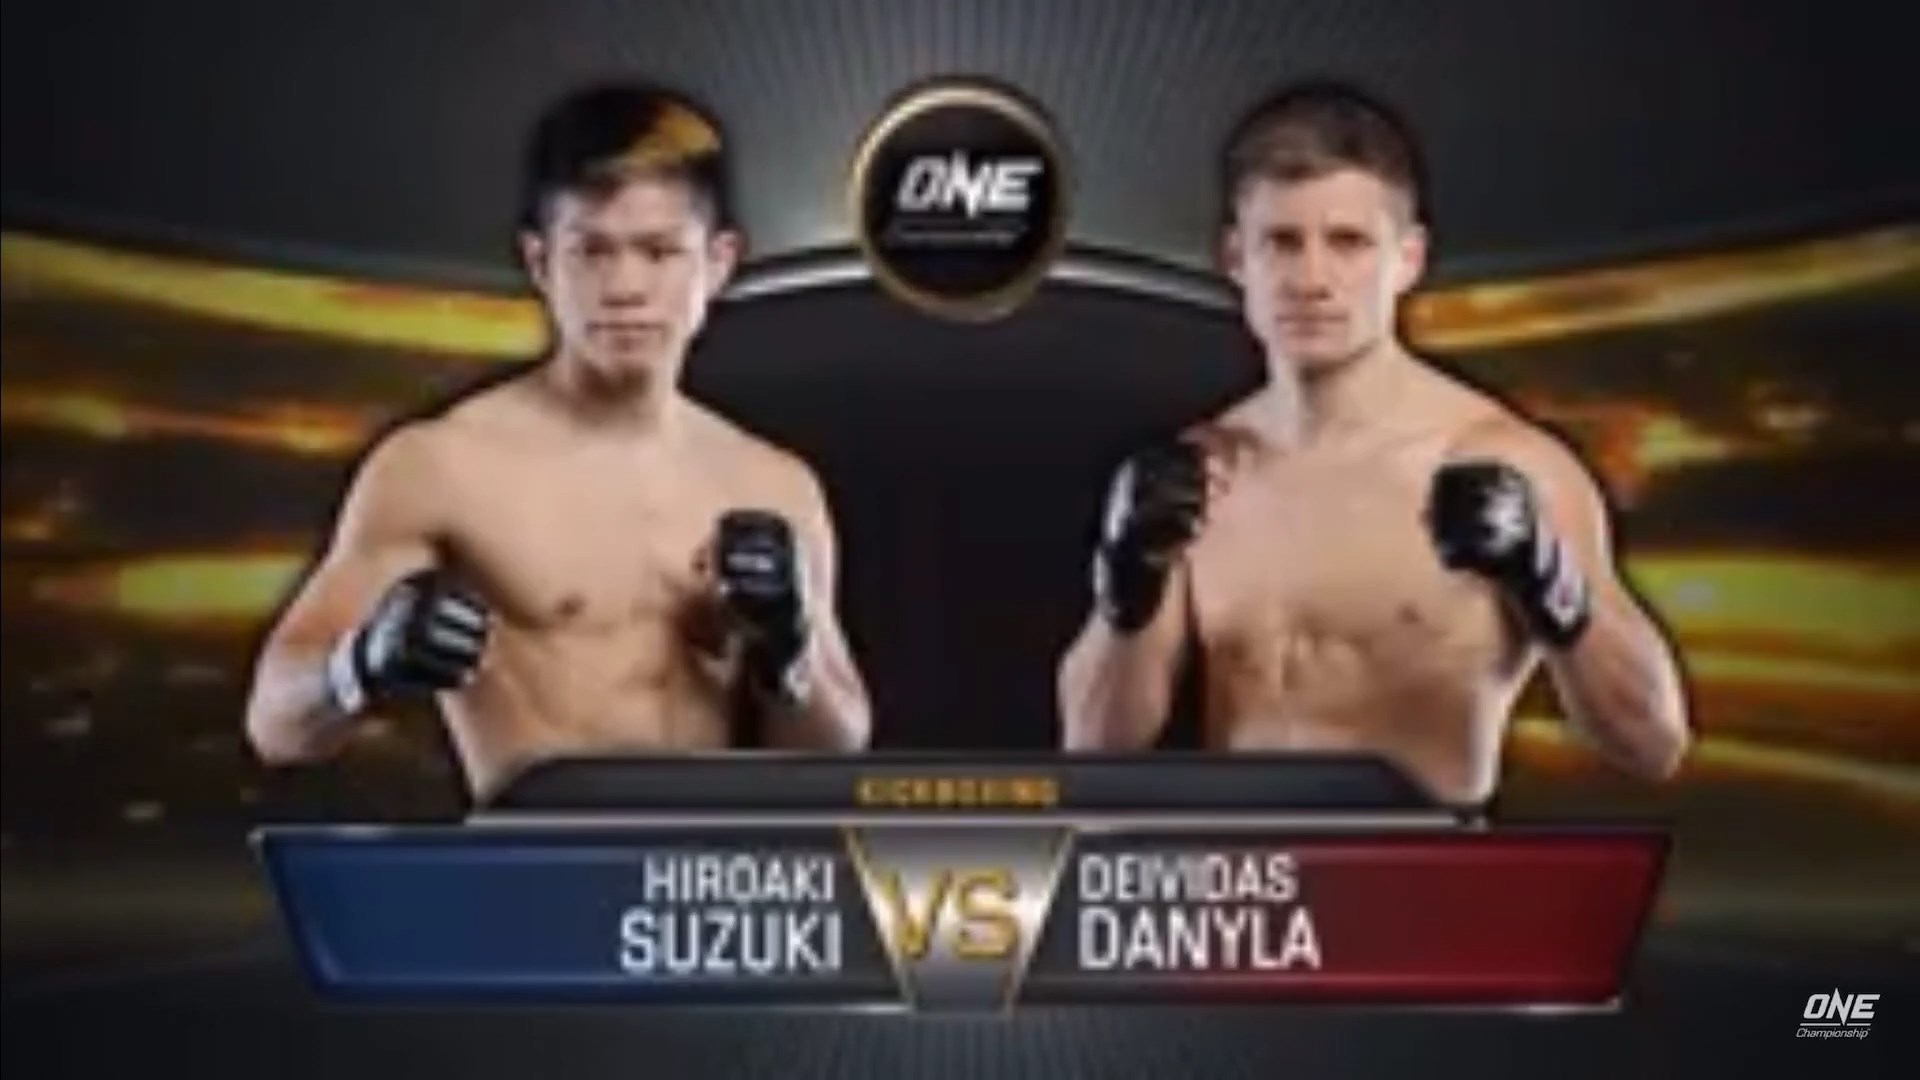 Deividas Danyla vs Hiroaki Suzuki Full Fight One Championship 85 MM...1920 x 1080